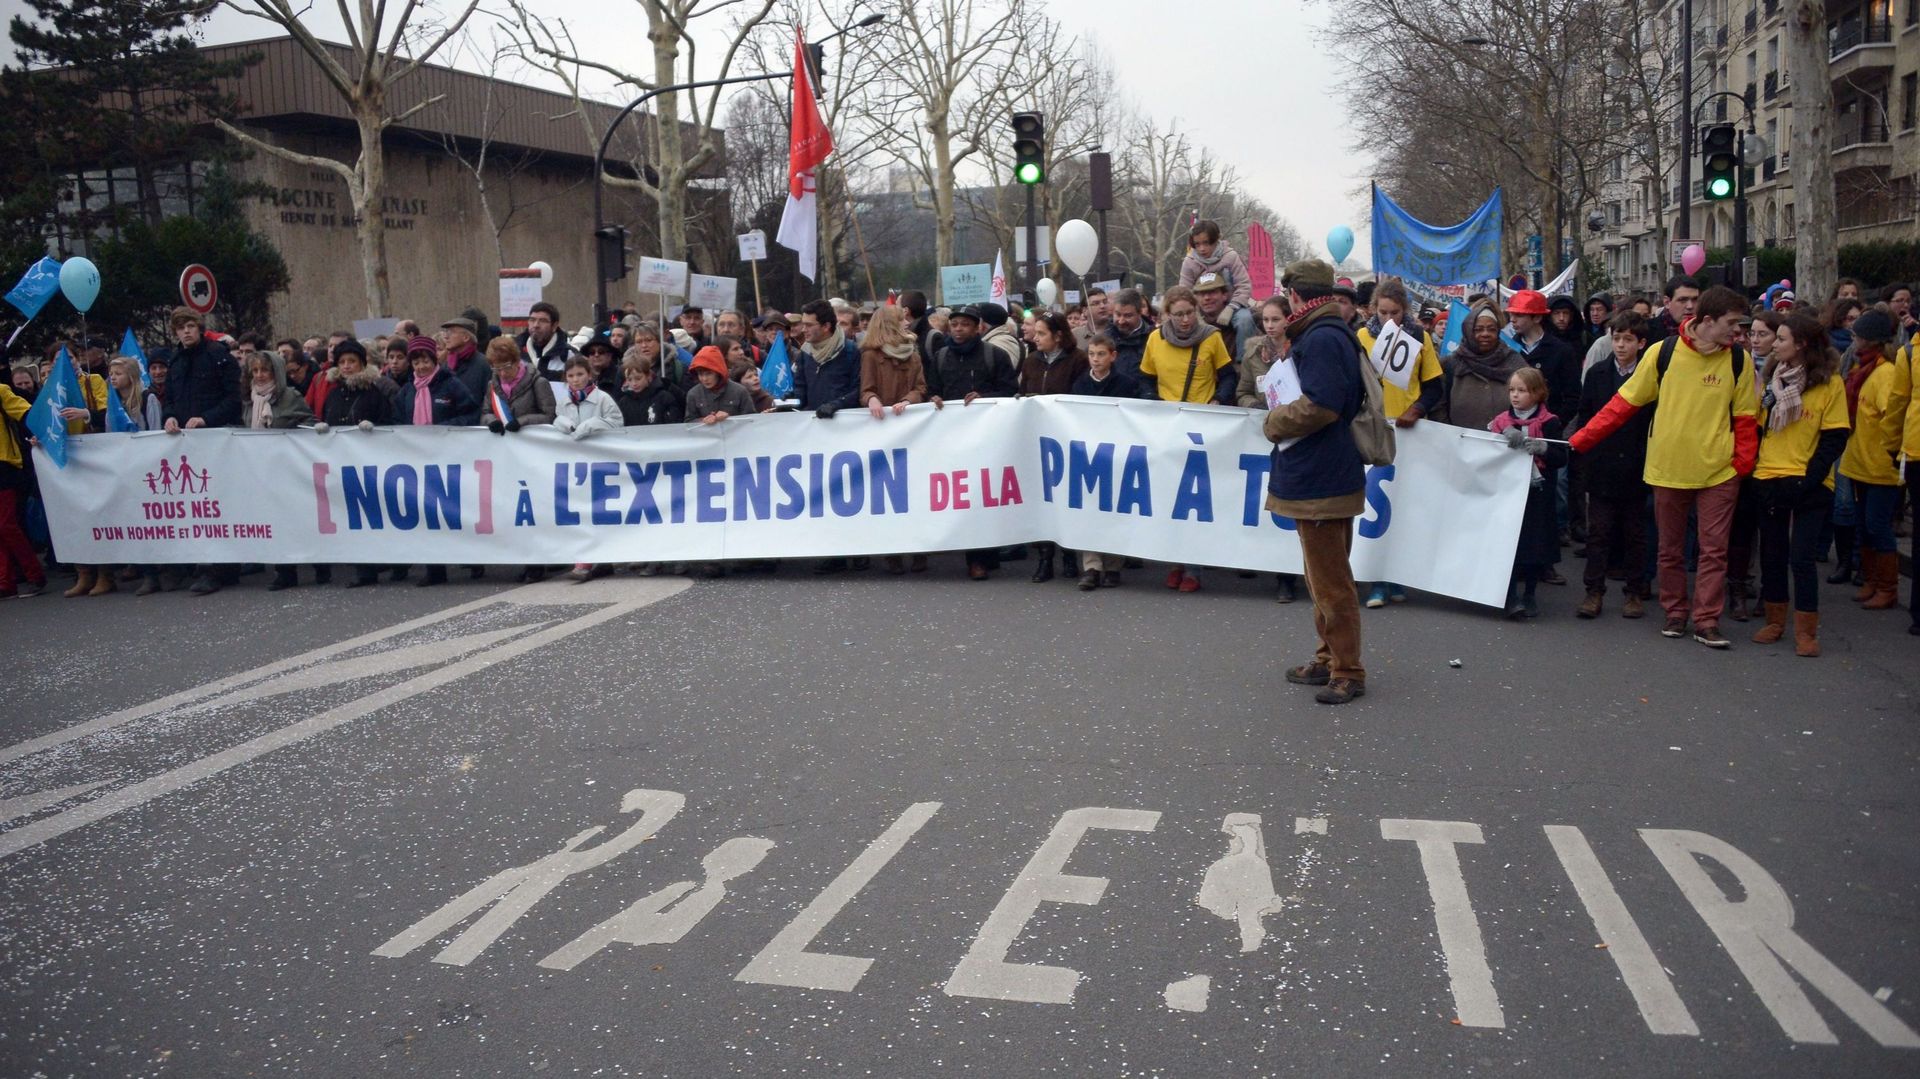 Les opposants à la PMA étaient déjà dans les rues de Paris en 2013.